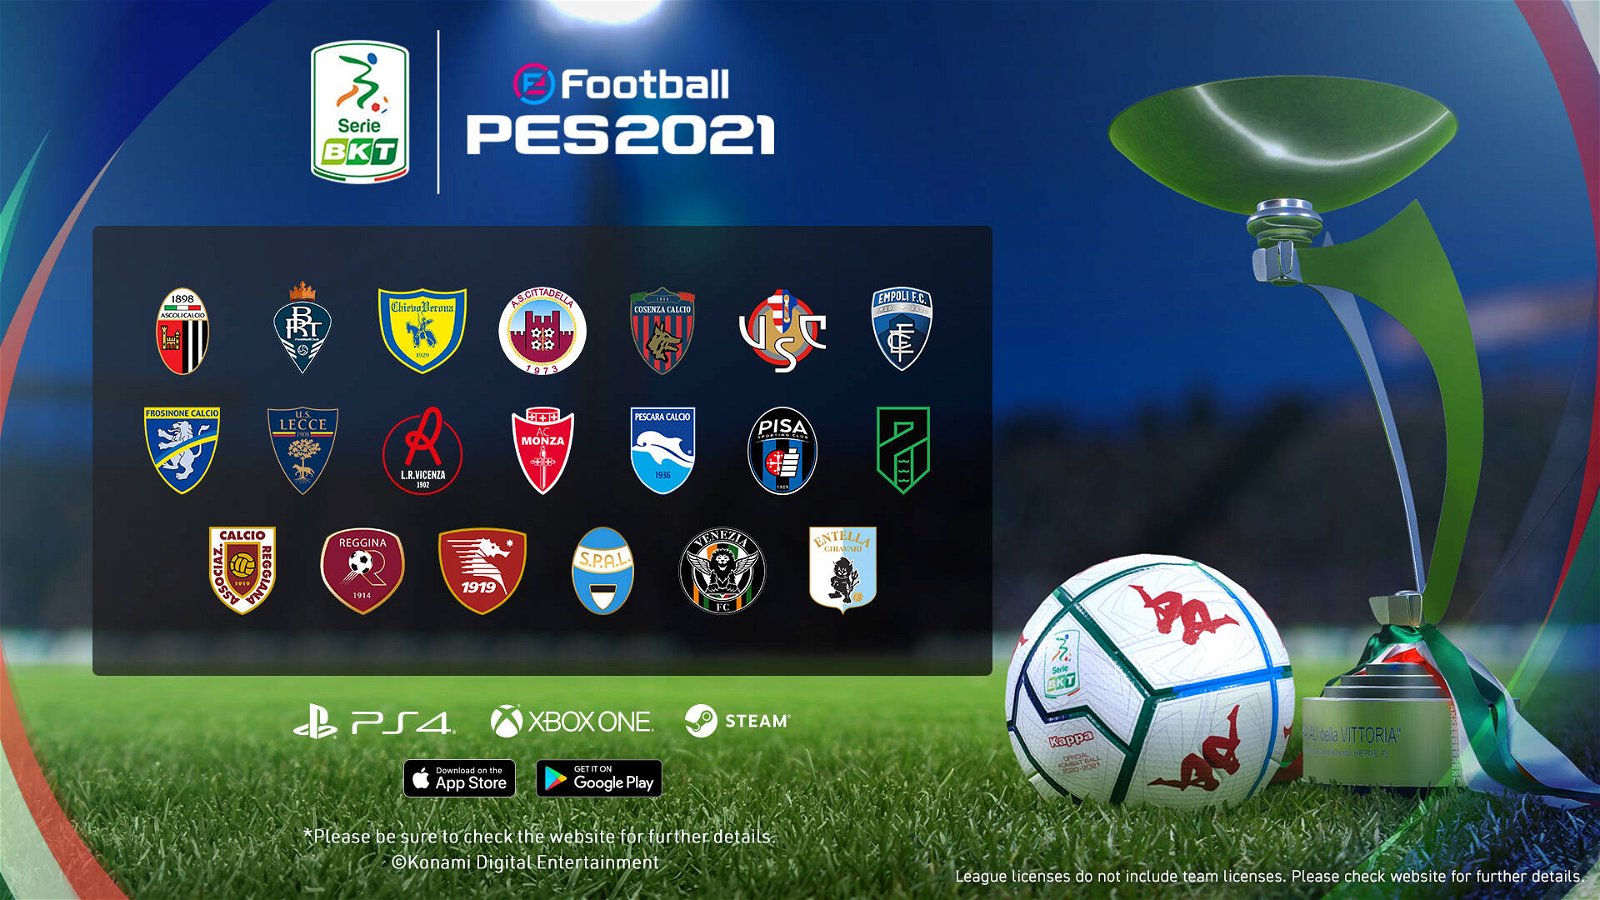 eFootball PES 2021 annuncia la Serie B e la Nazionale Italiana in esclusiva!